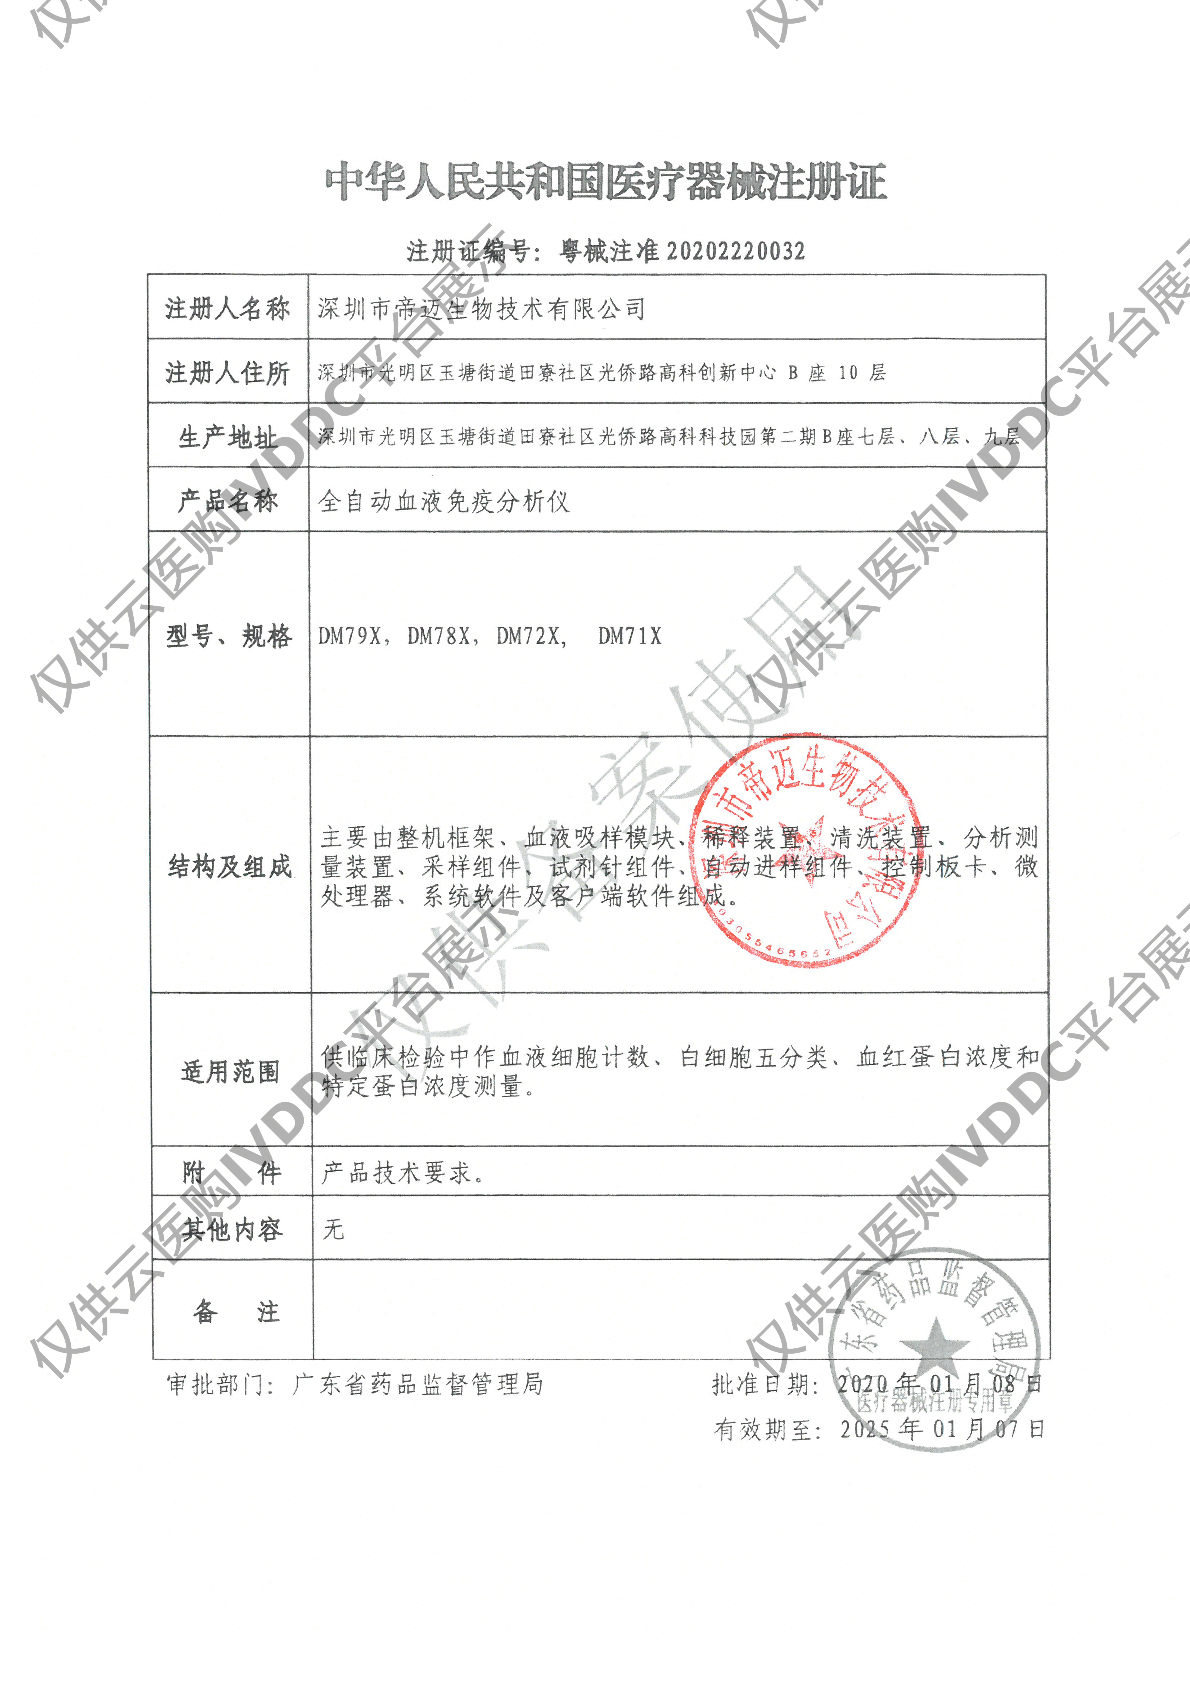 【帝迈】全自动血液免疫分析仪 DM79X注册证